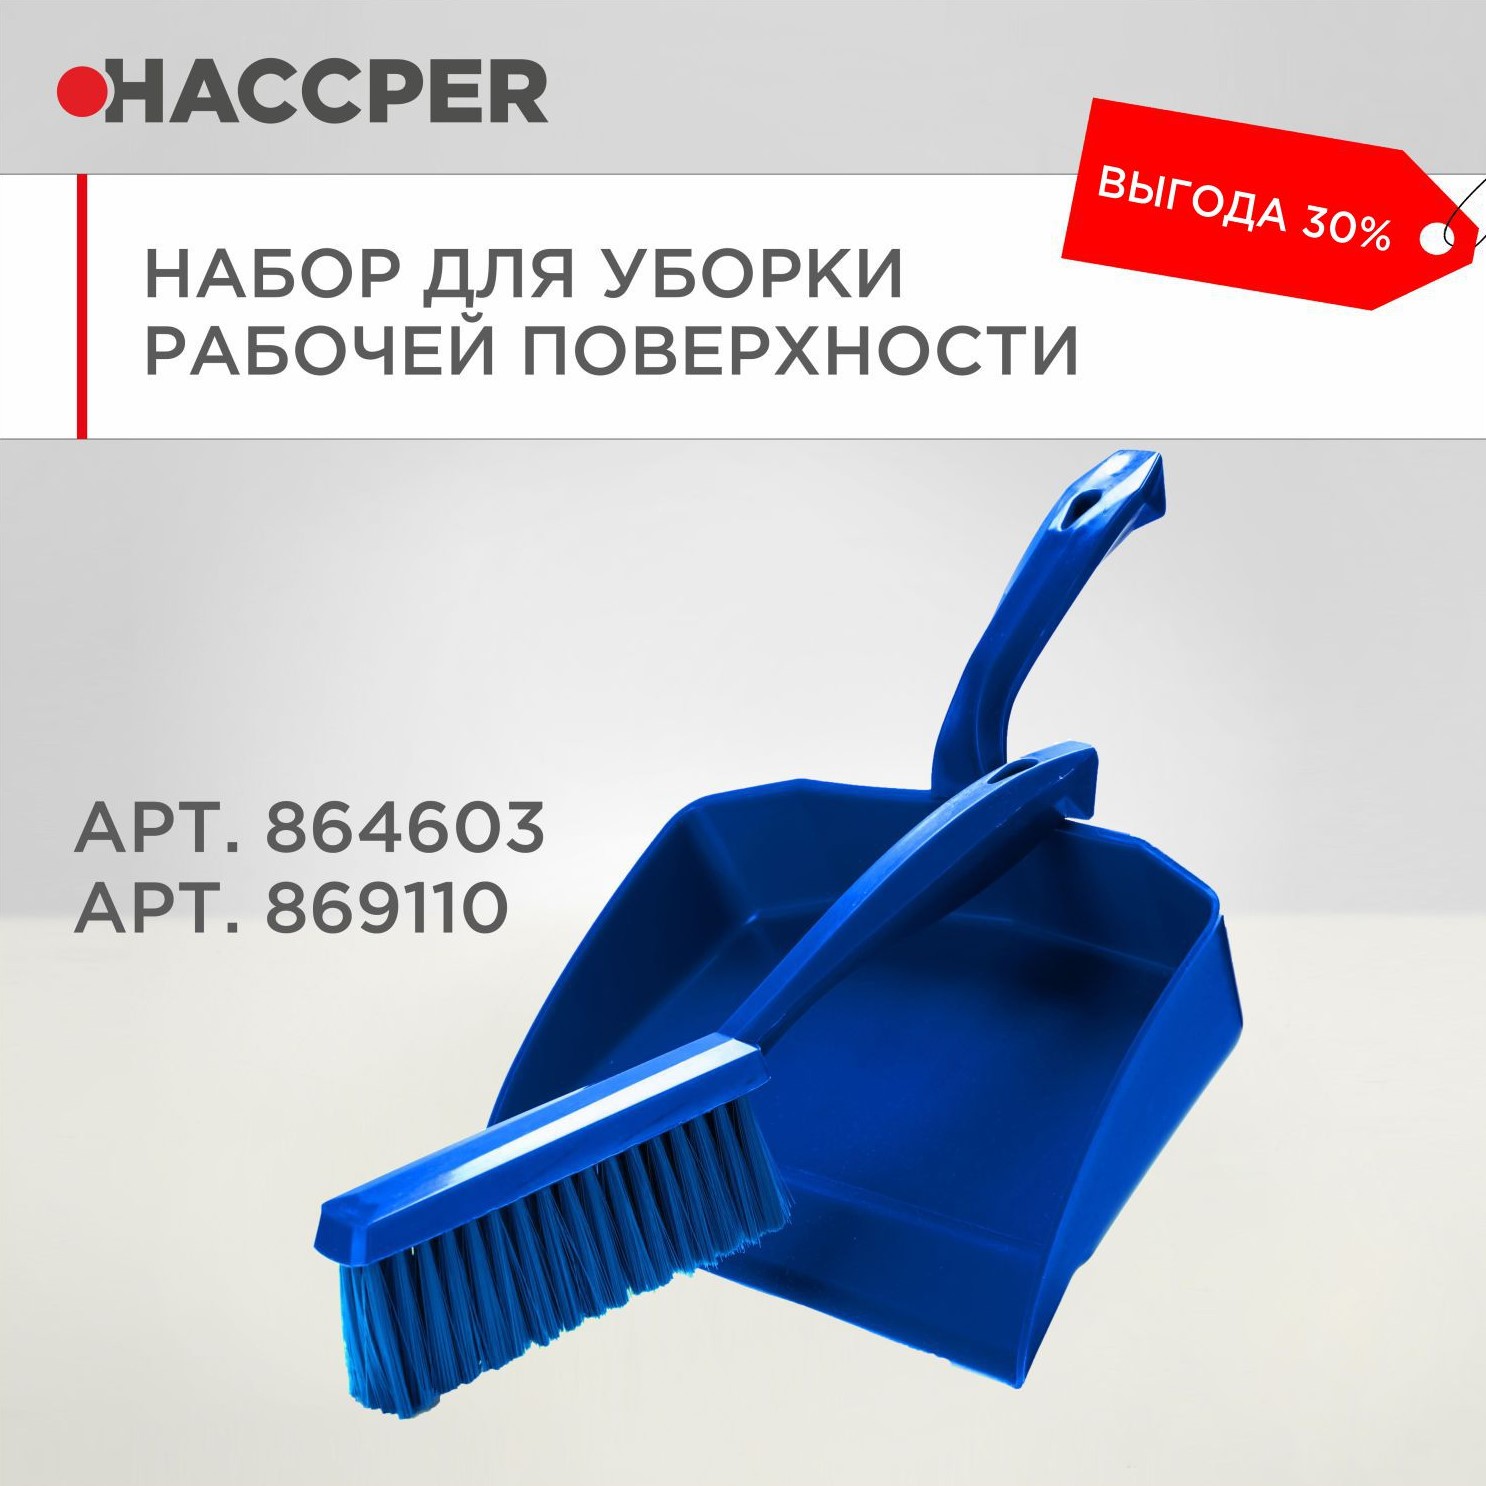 Набор для уборки рабочих поверхностей HACCPER, синий